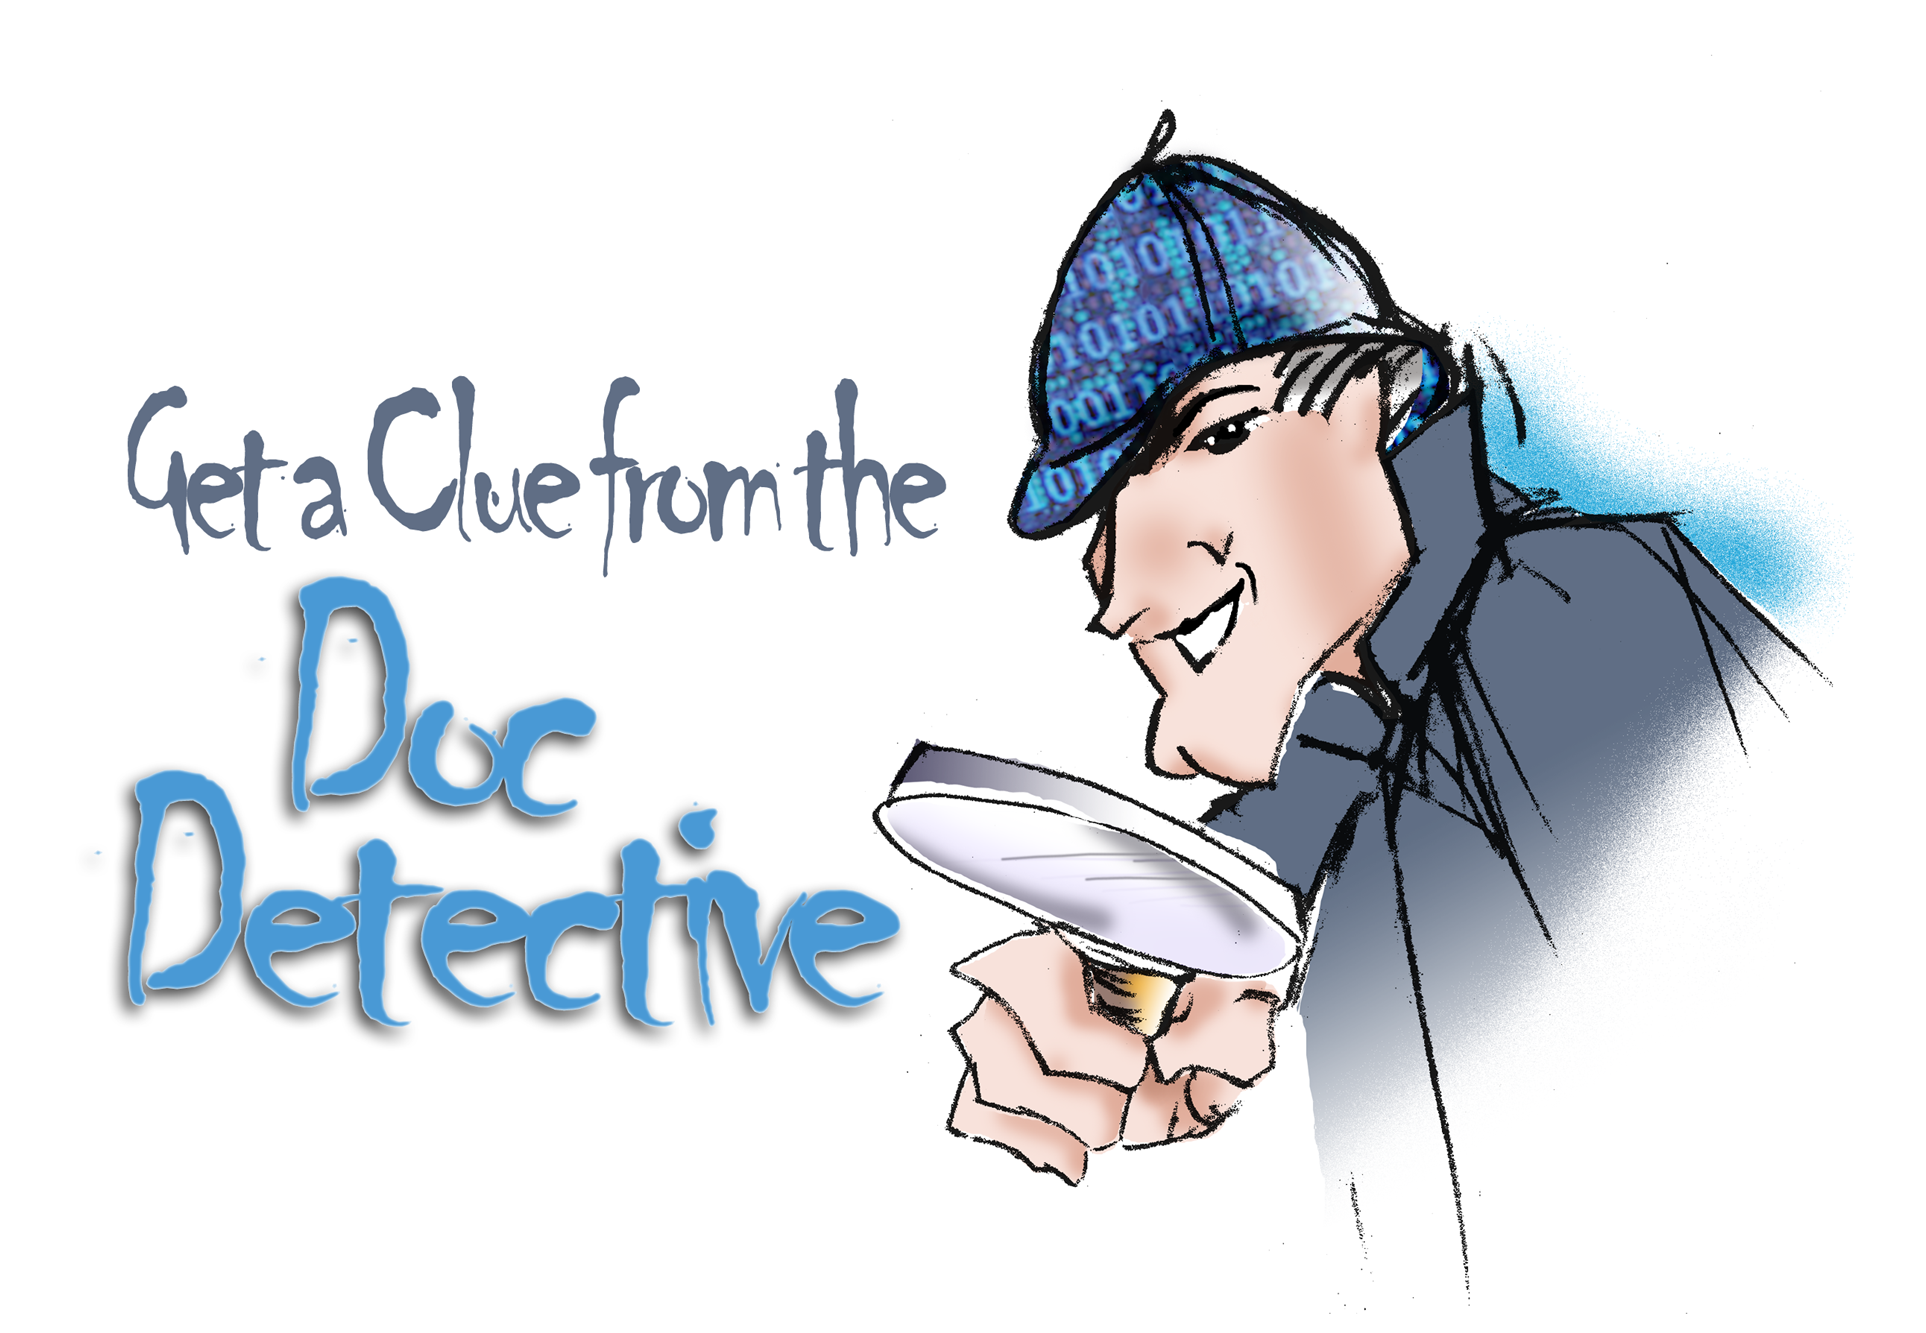 The Doc Detective